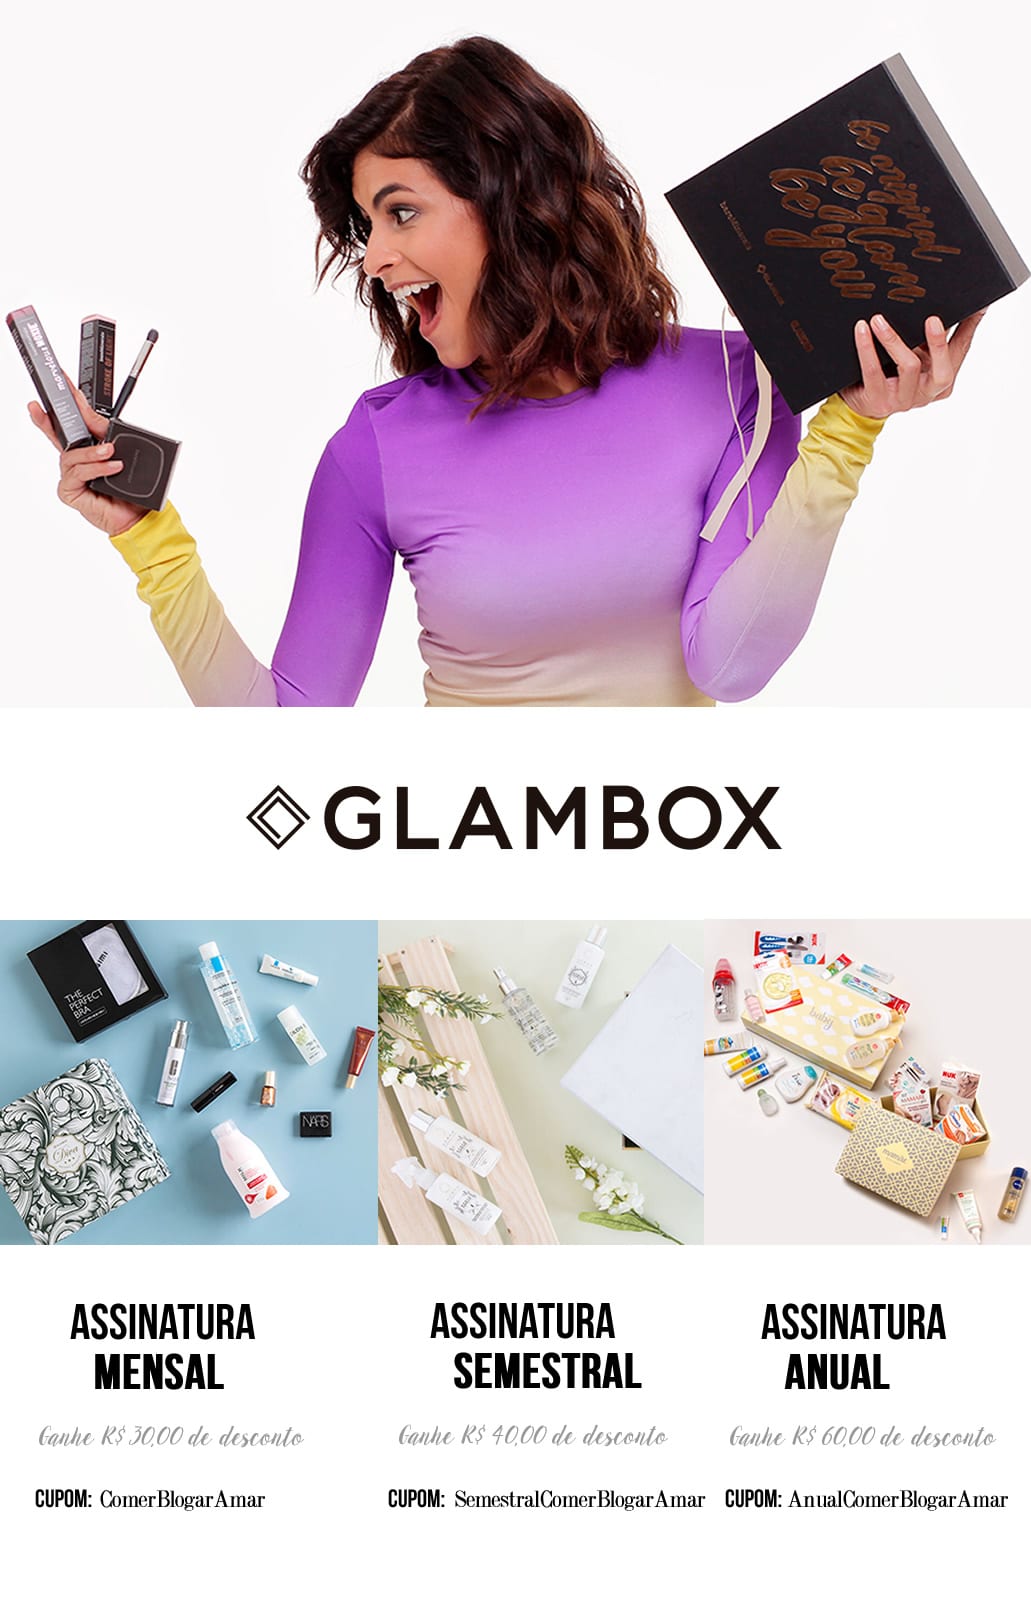 Cupom de Desconto Glambox novembro 2017, como conseguir cupom de desconto glambox, Cupom de Desconto, Glambox Joy, #GlamboxJoy